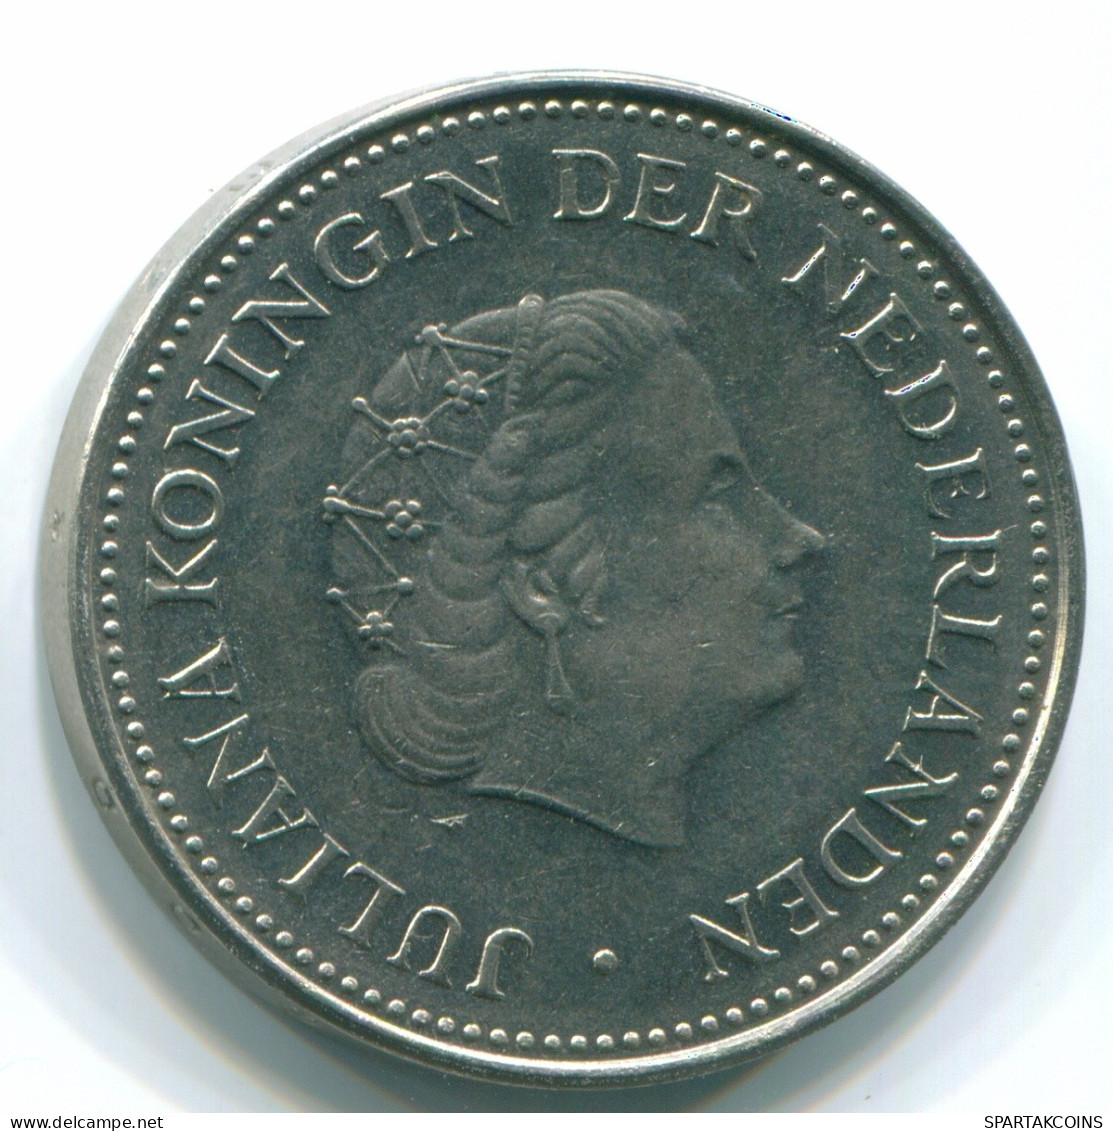 1 GULDEN 1971 ANTILLAS NEERLANDESAS Nickel Colonial Moneda #S12014.E.A - Antillas Neerlandesas